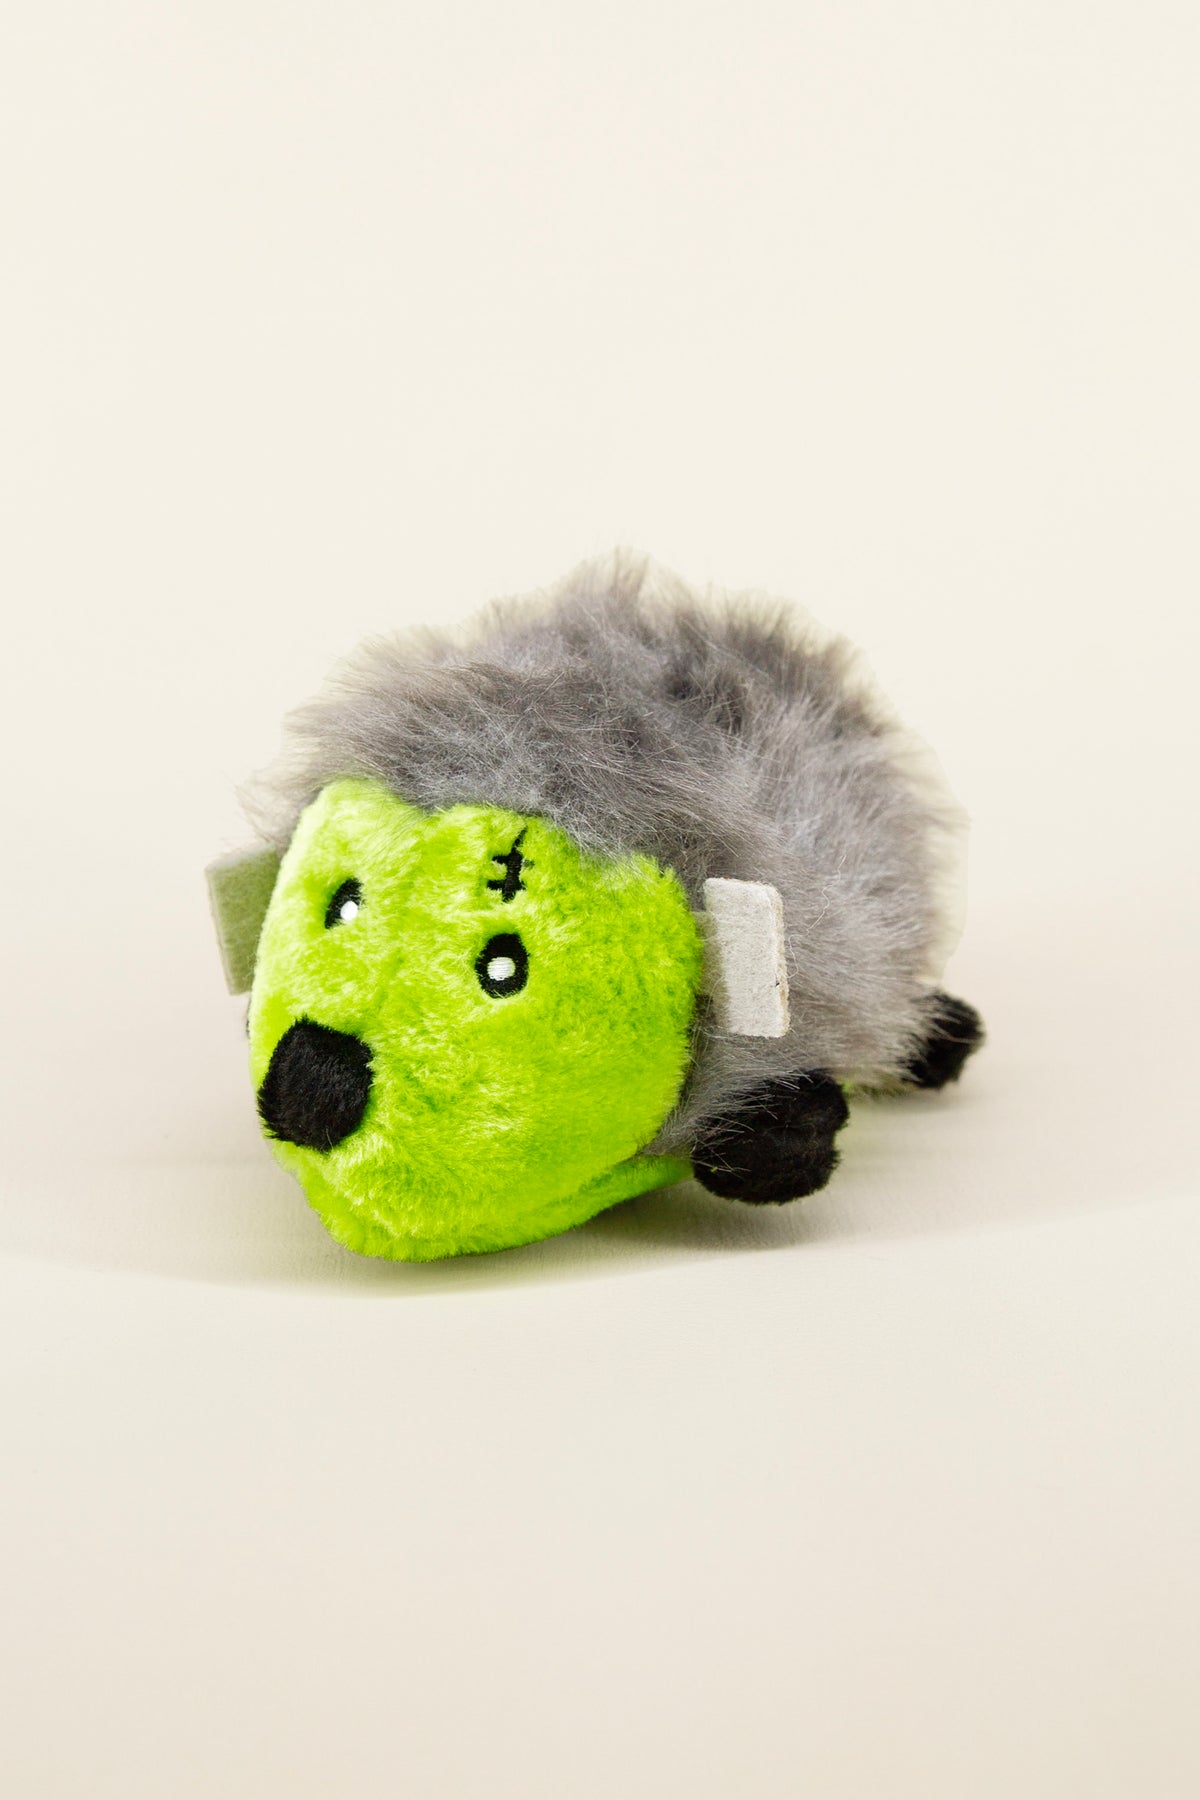 frankenstein hedgehog dog toy